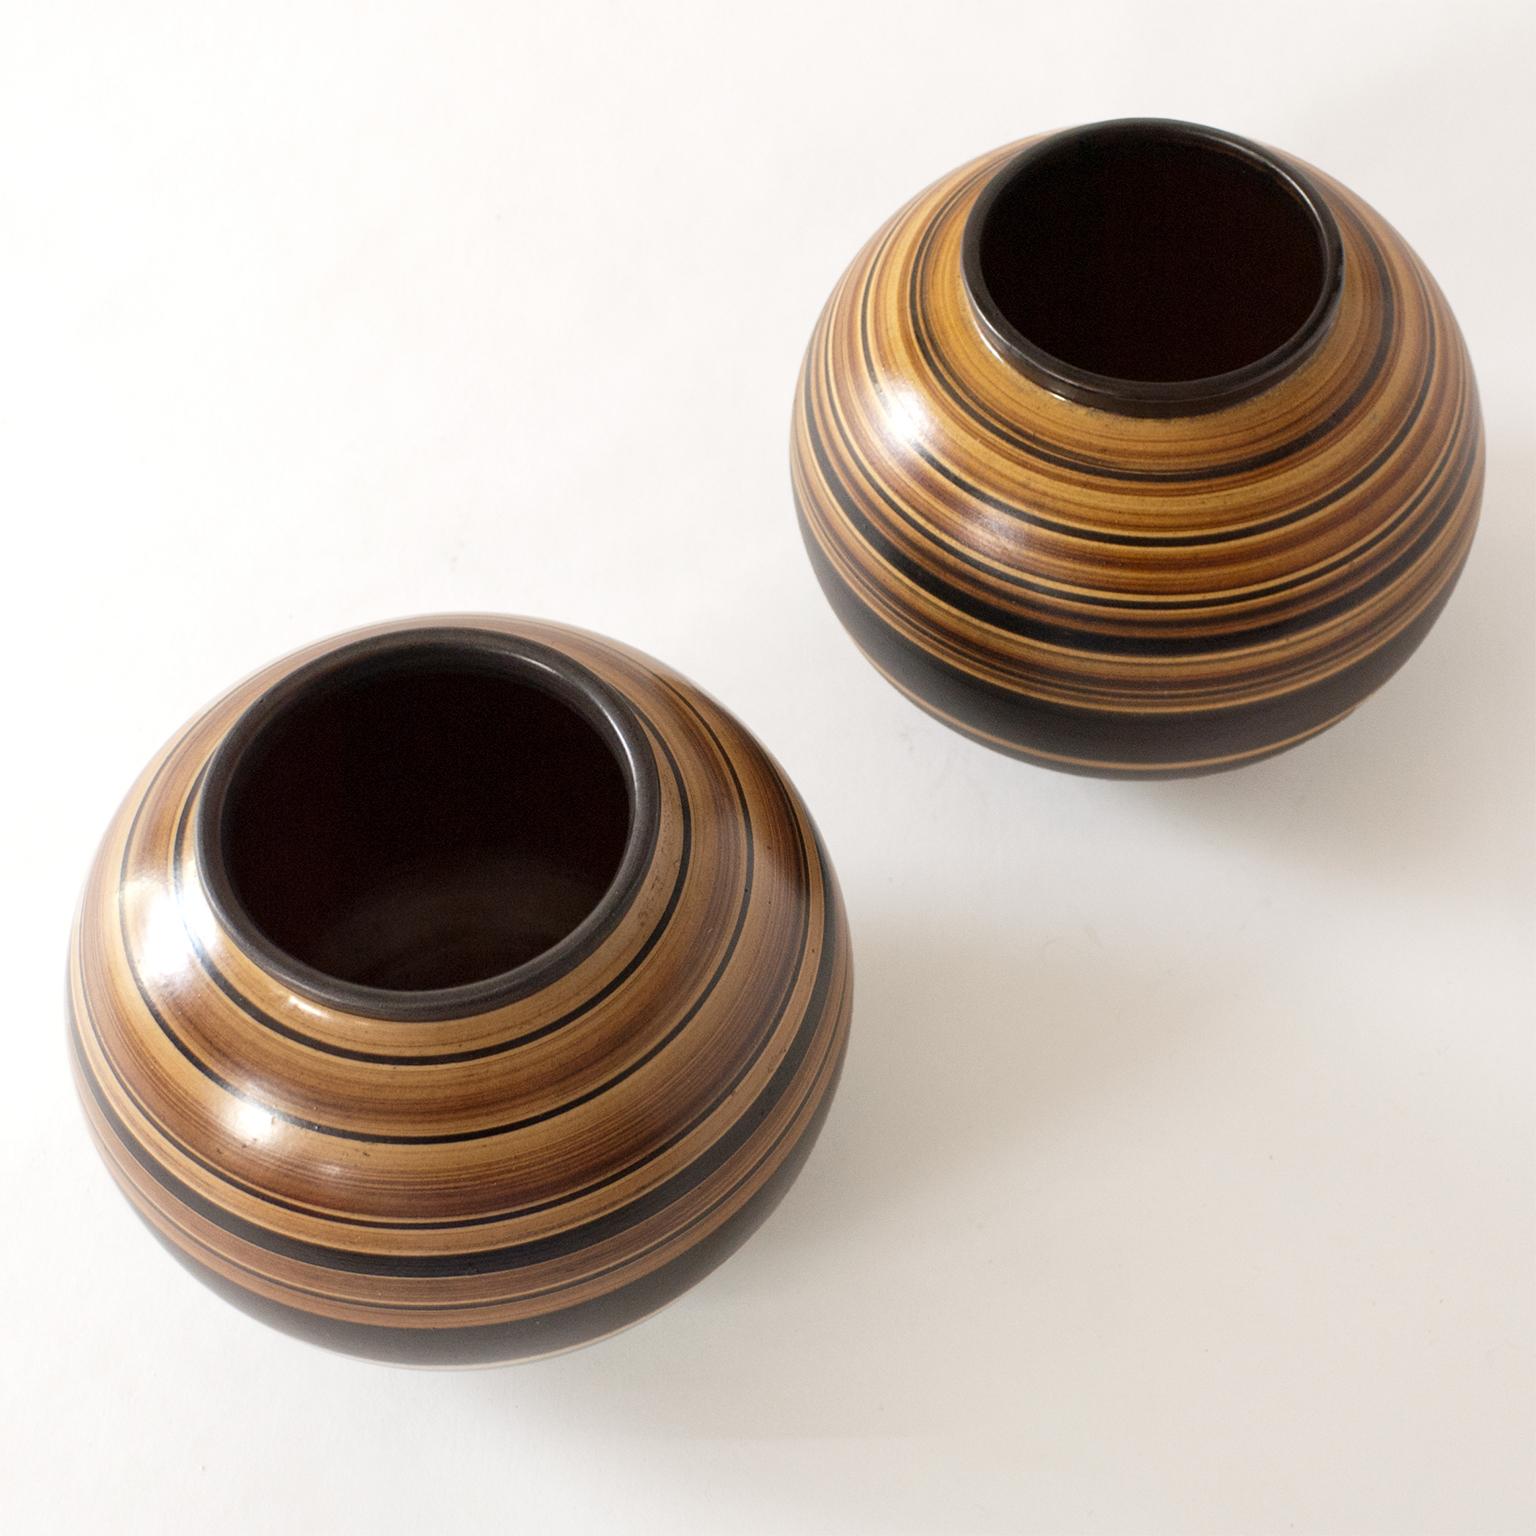 20th Century Pair of Scandinavian Modern Ceramic Vases by Jerk Werkmaster for Nittsjo